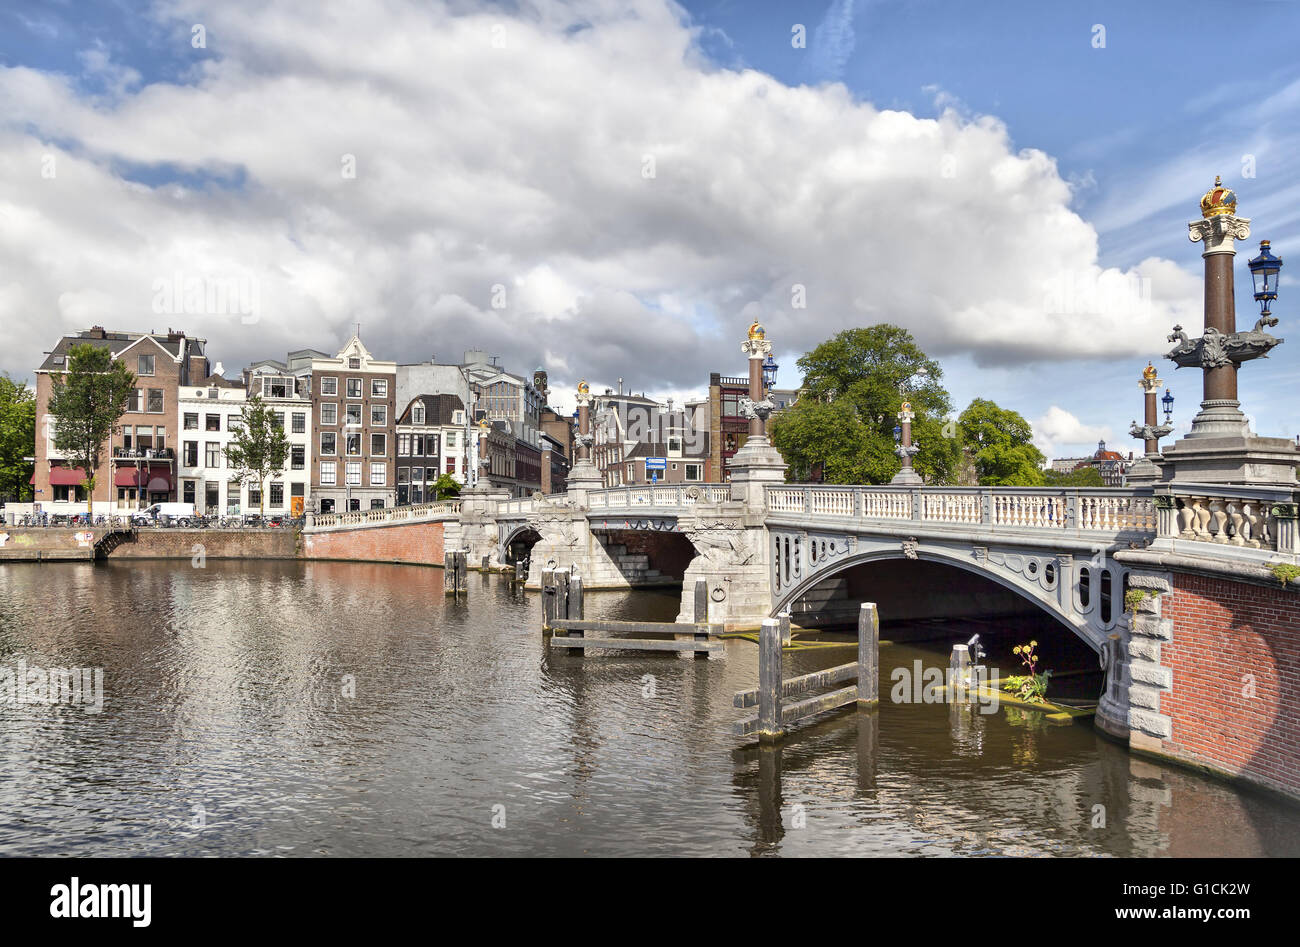 Blauwbrug) historique pont (pont bleu) à Amsterdam, Pays-Bas. Elle relie le quartier Rembrandtplein Waterlooplein avec l'ar Banque D'Images